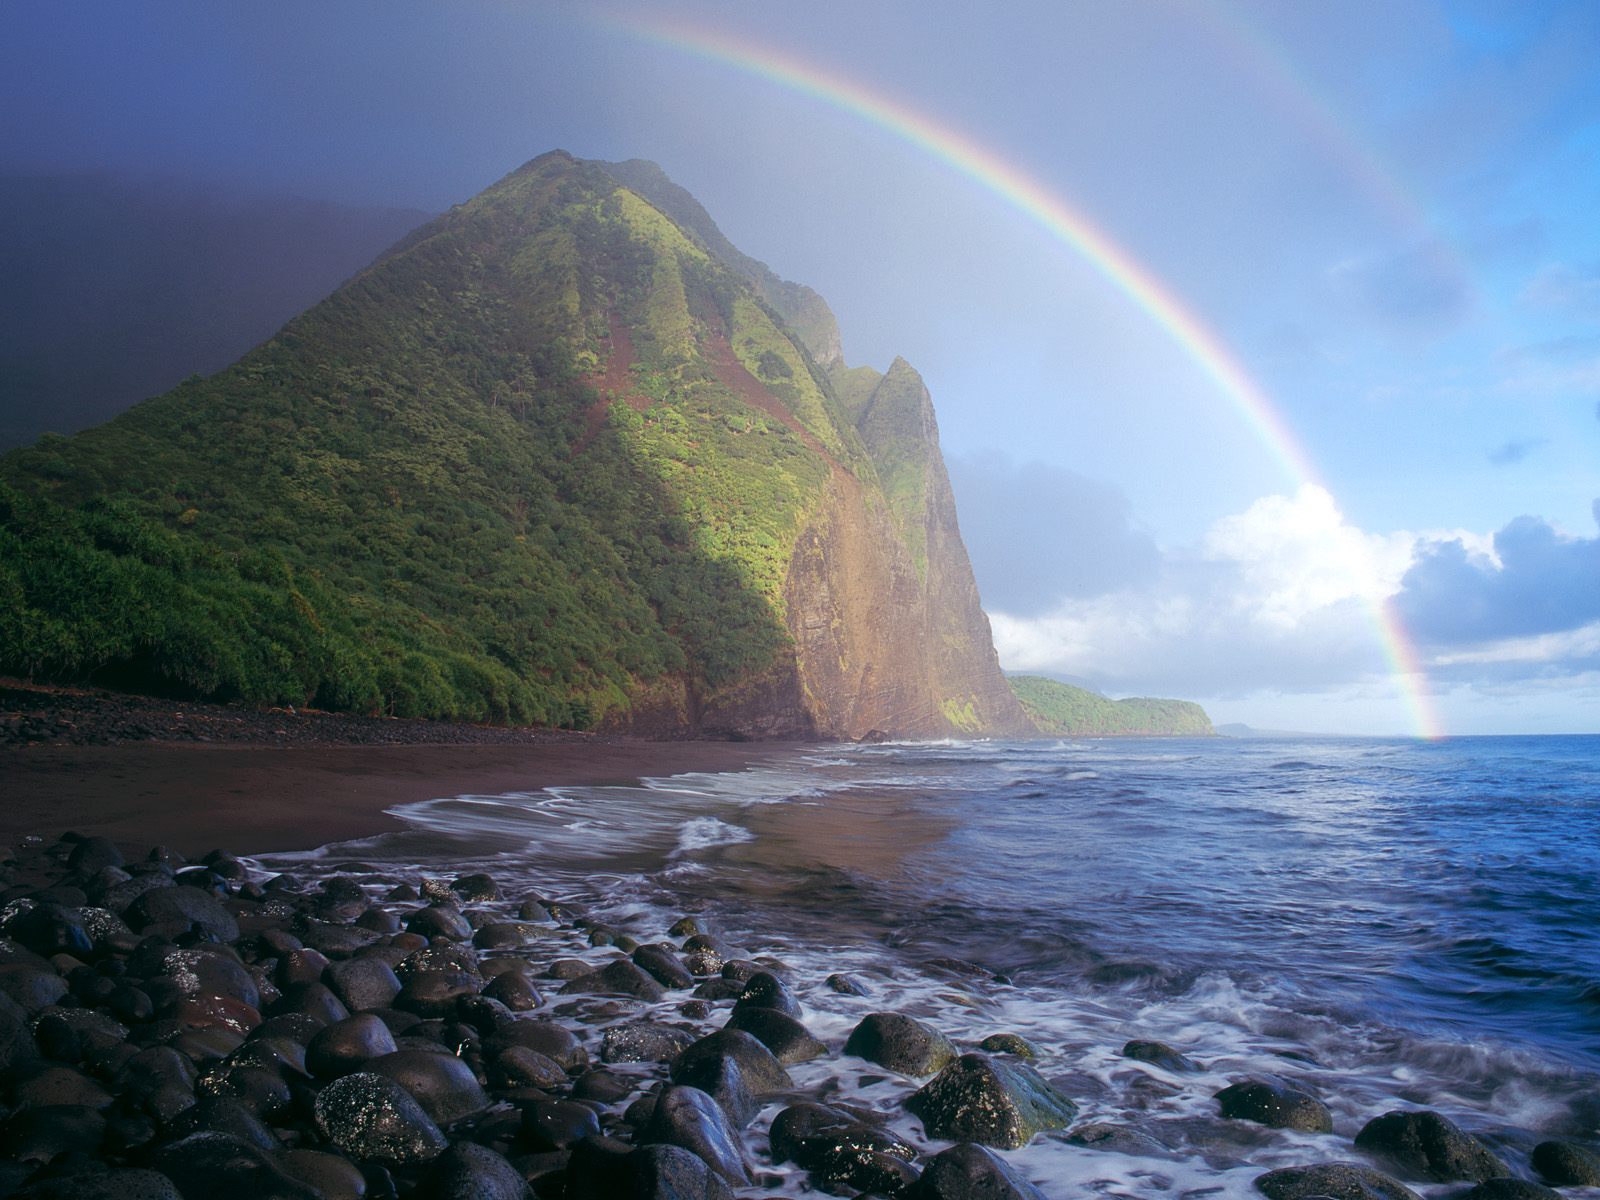 Hq Misty Rainbow Waialu Valley Molokai Hawaii Wallpaper